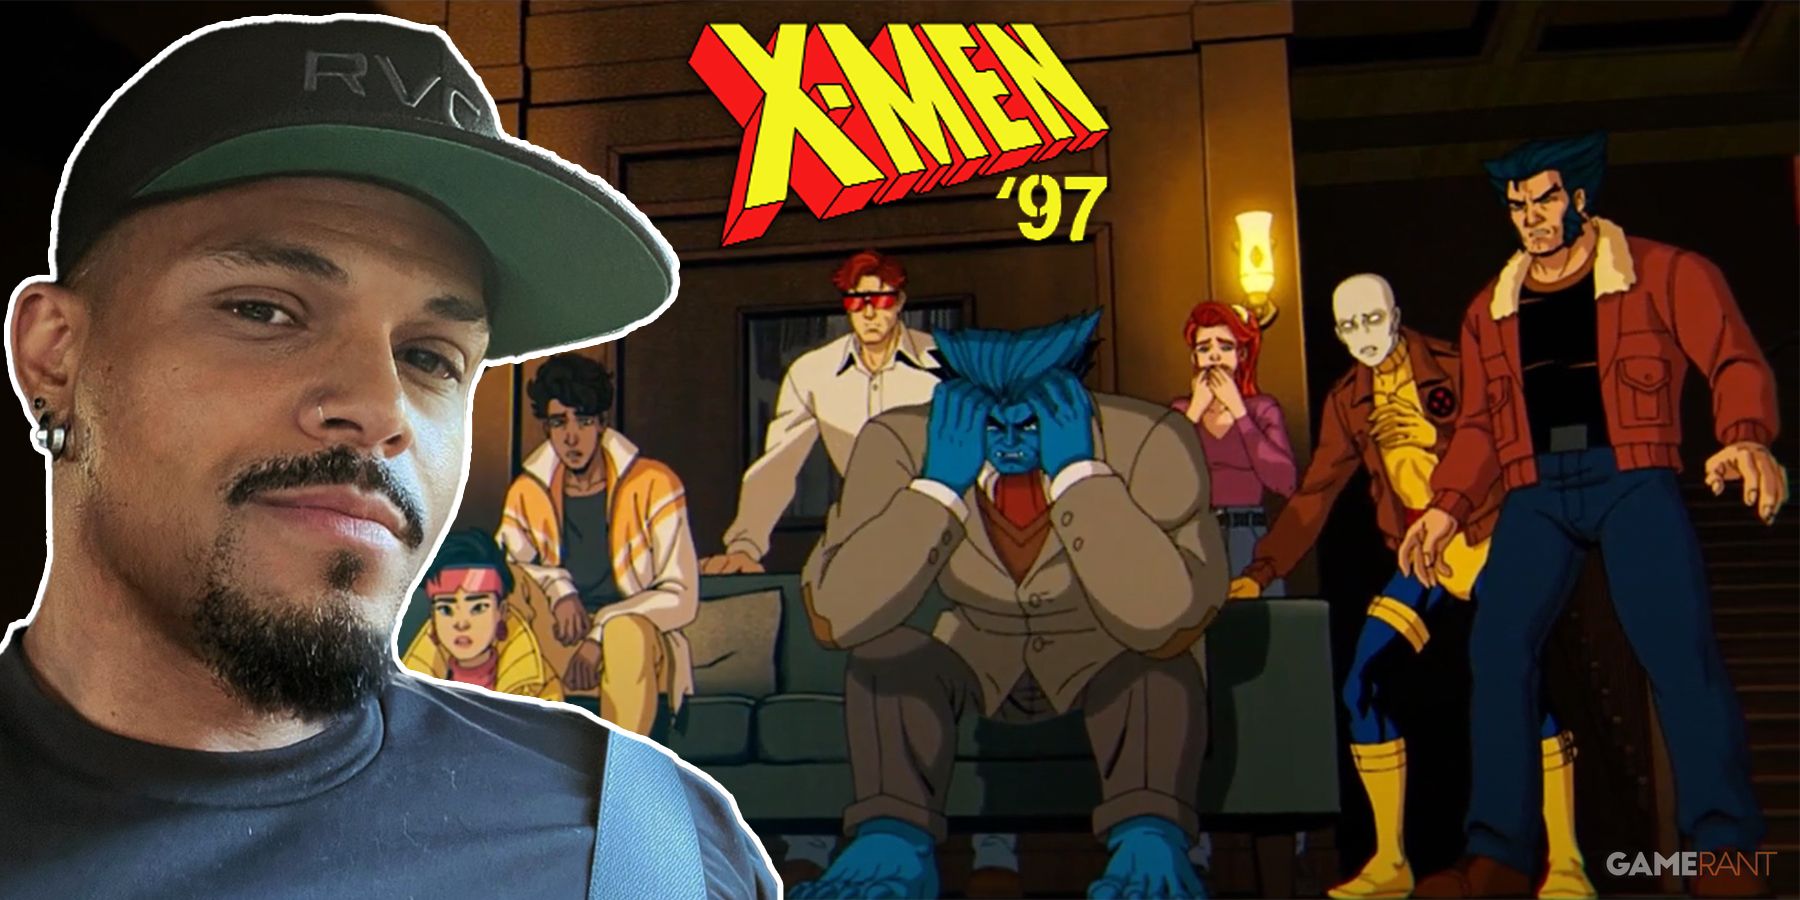 X-Men '97 Showrunner Beau DeMayo Episode 5 